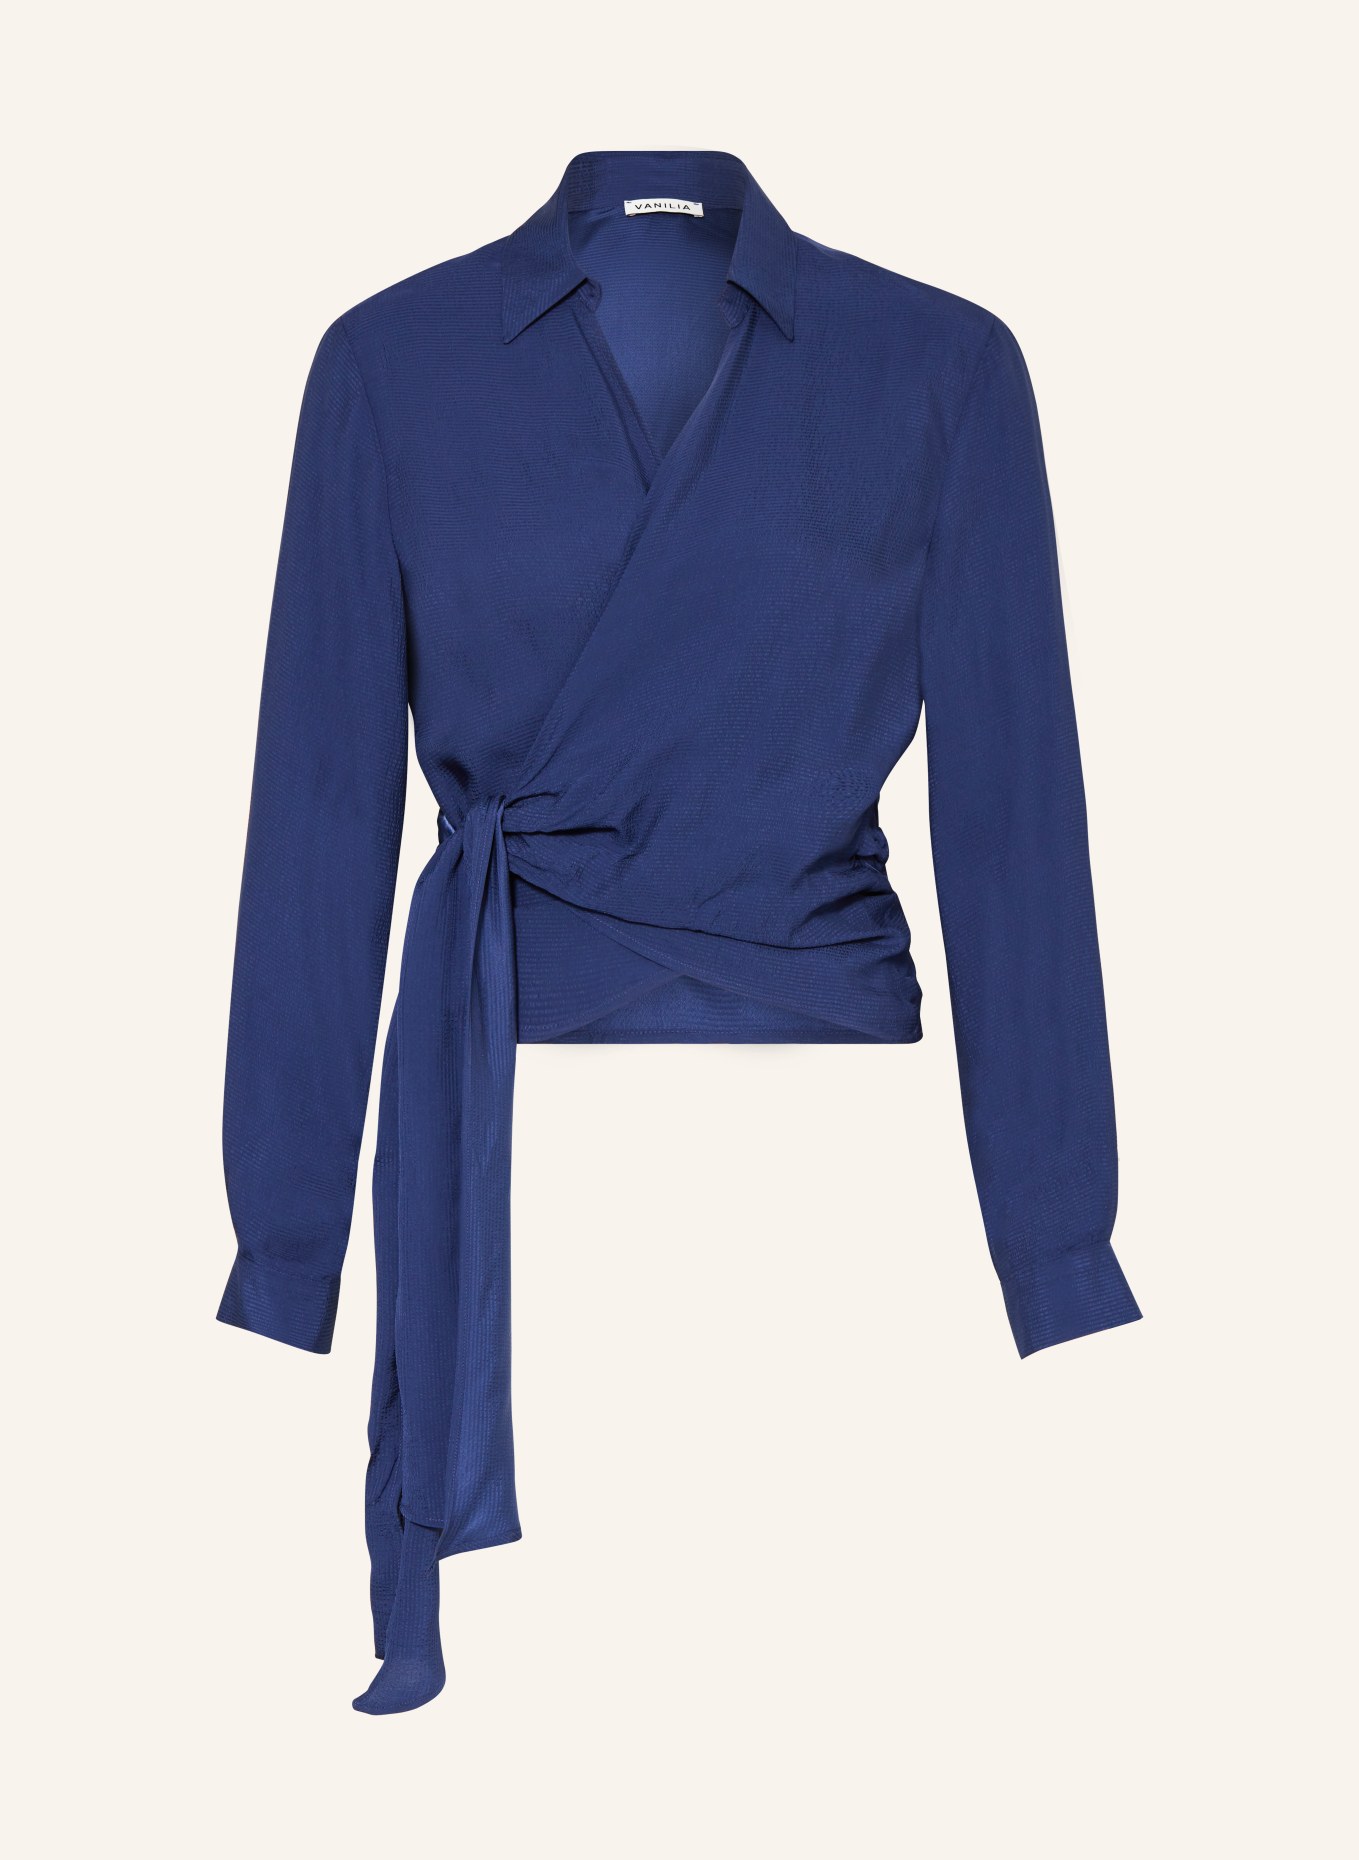 VANILIA Wrap blouse, Color: BLUE (Image 1)